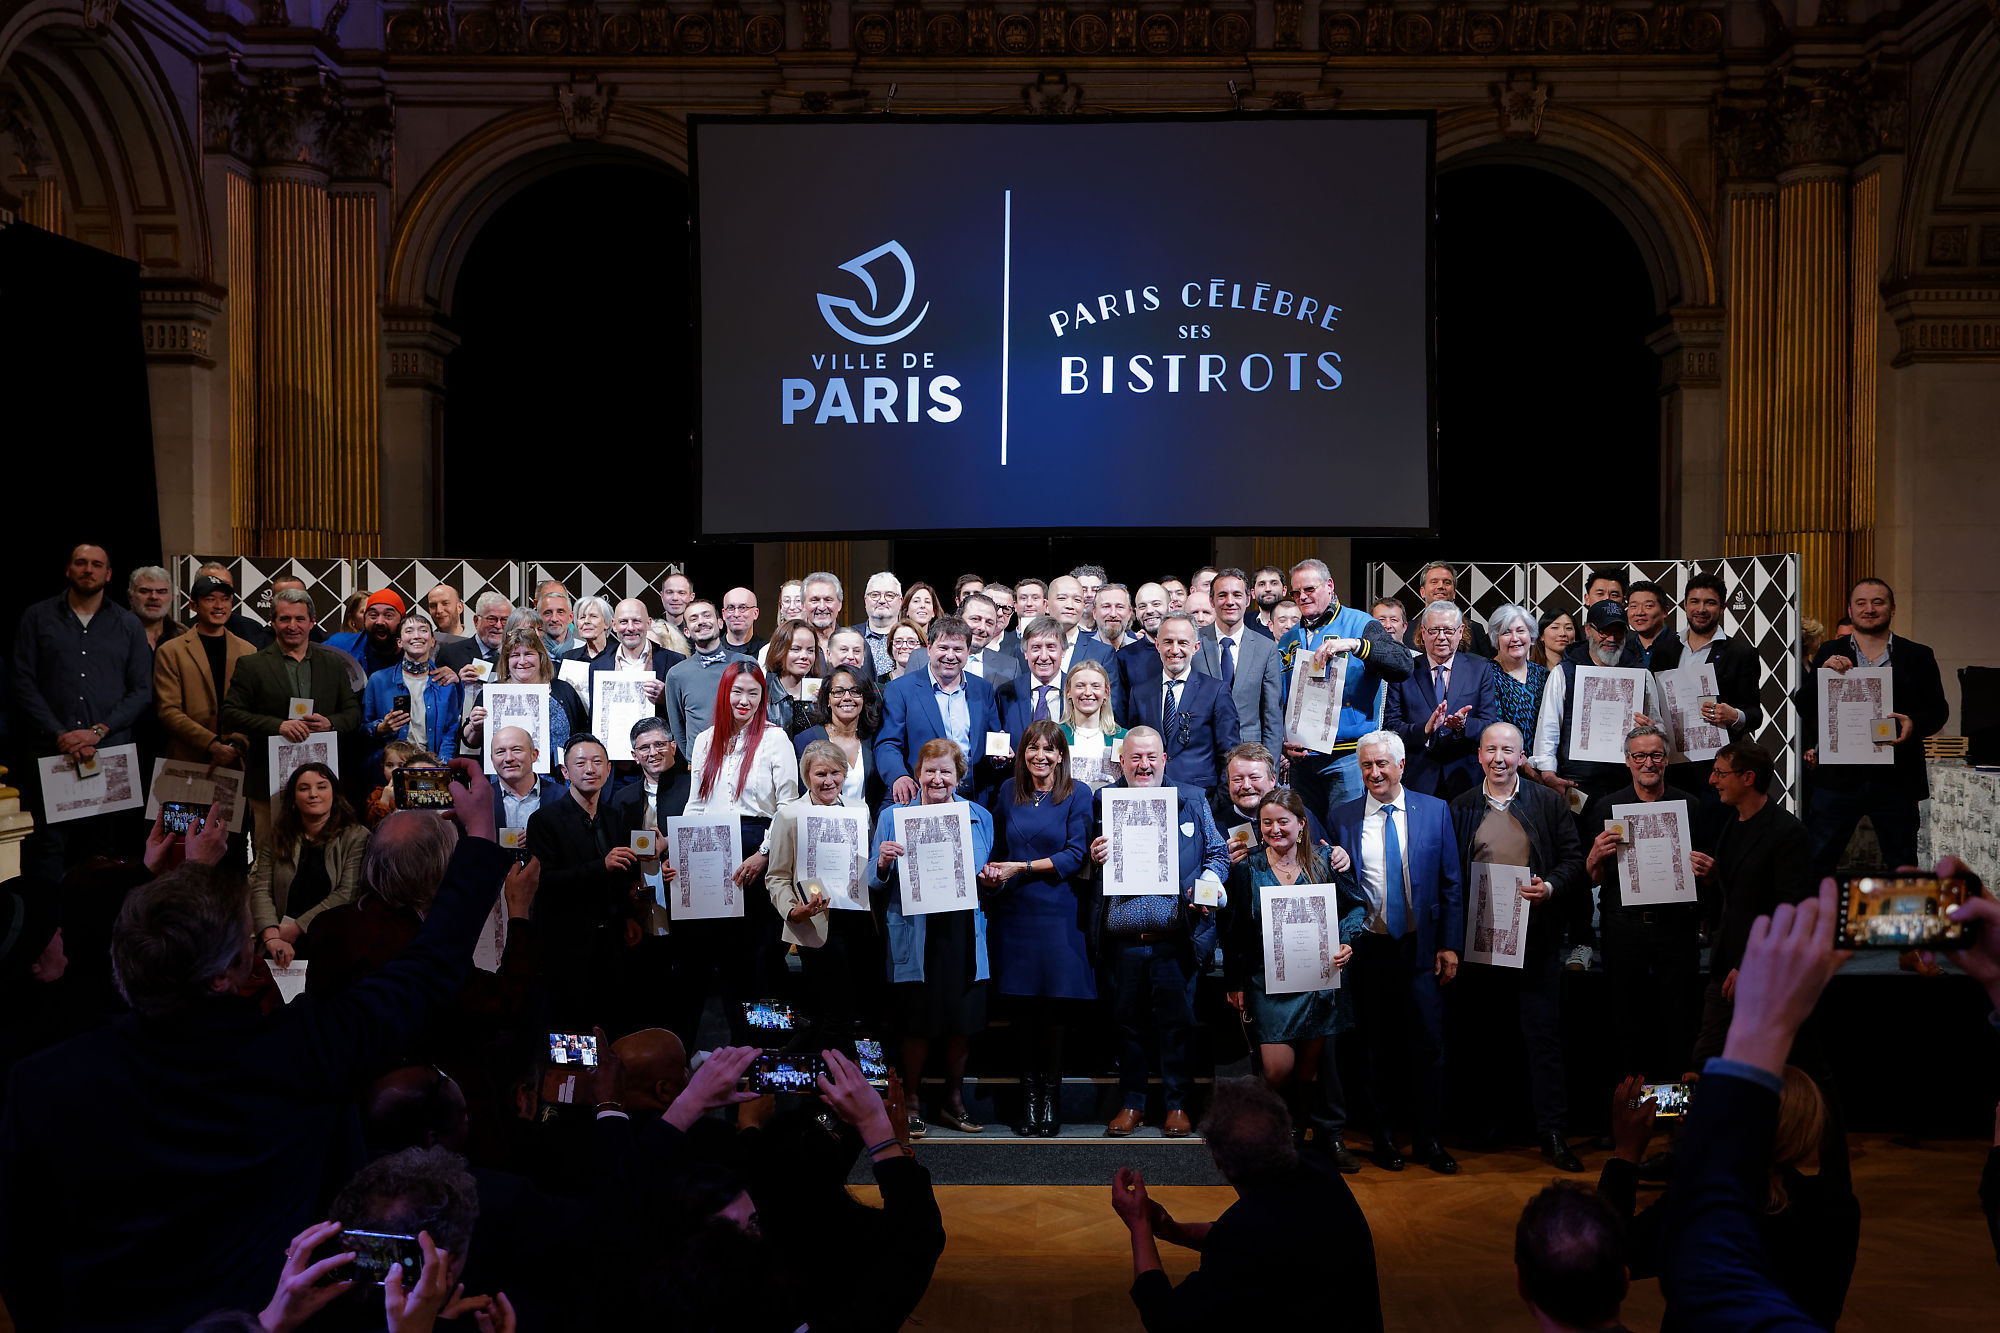 62 bistrots reçoivent la Grande Médaille de Vermeil de la Ville de Paris